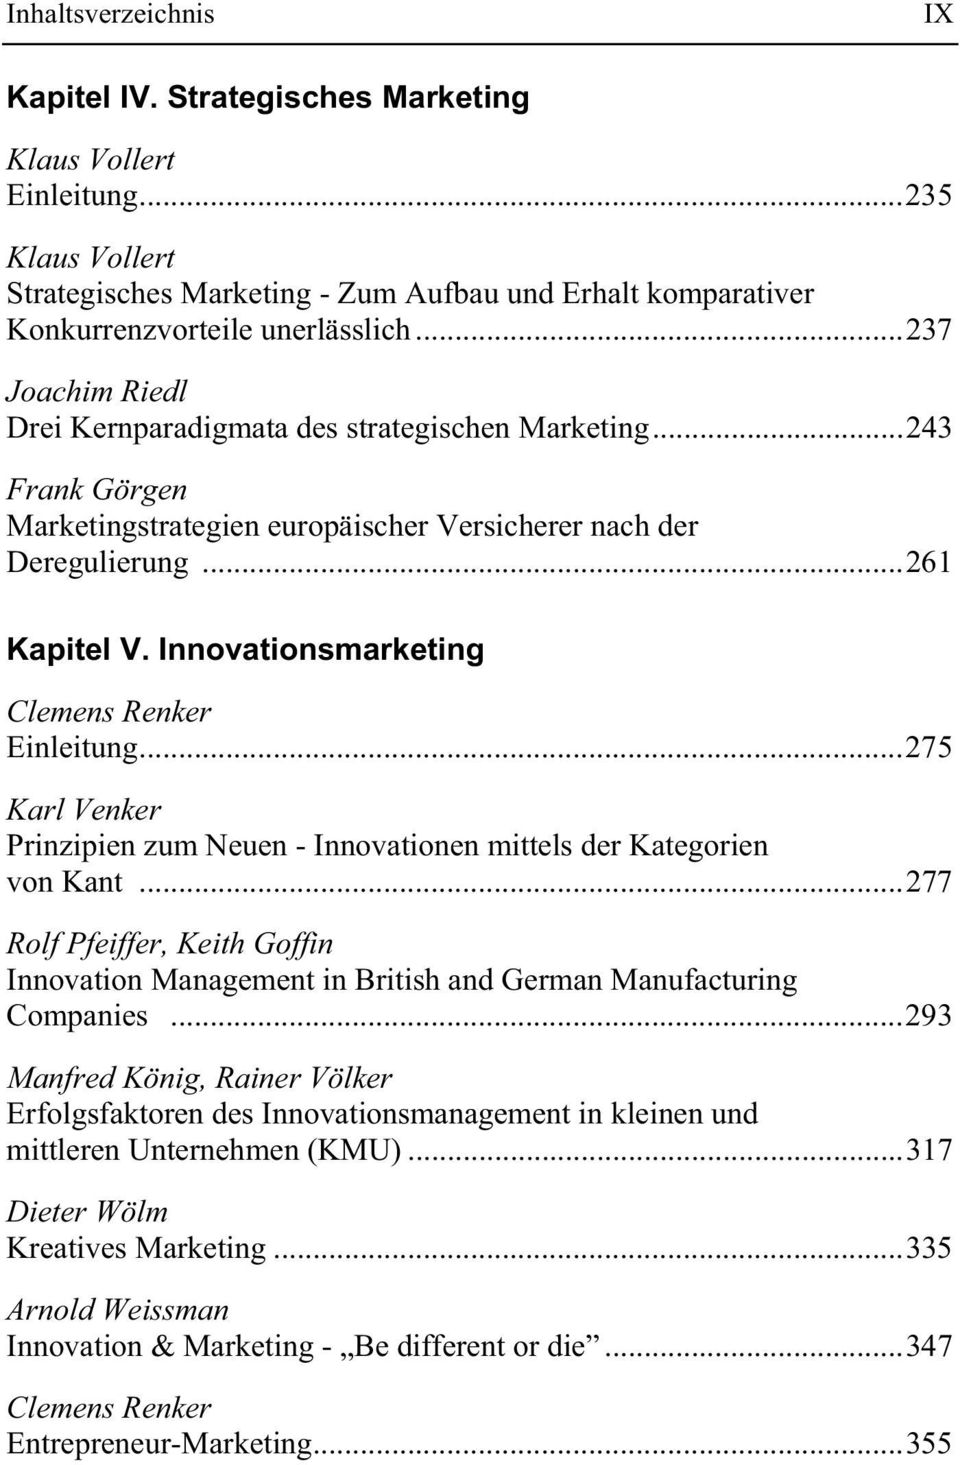 Innovationsmarketing Clemens Renker Einleitung...275 Karl Venker Prinzipien zum Neuen - Innovationen mittels der Kategorien von Kant.